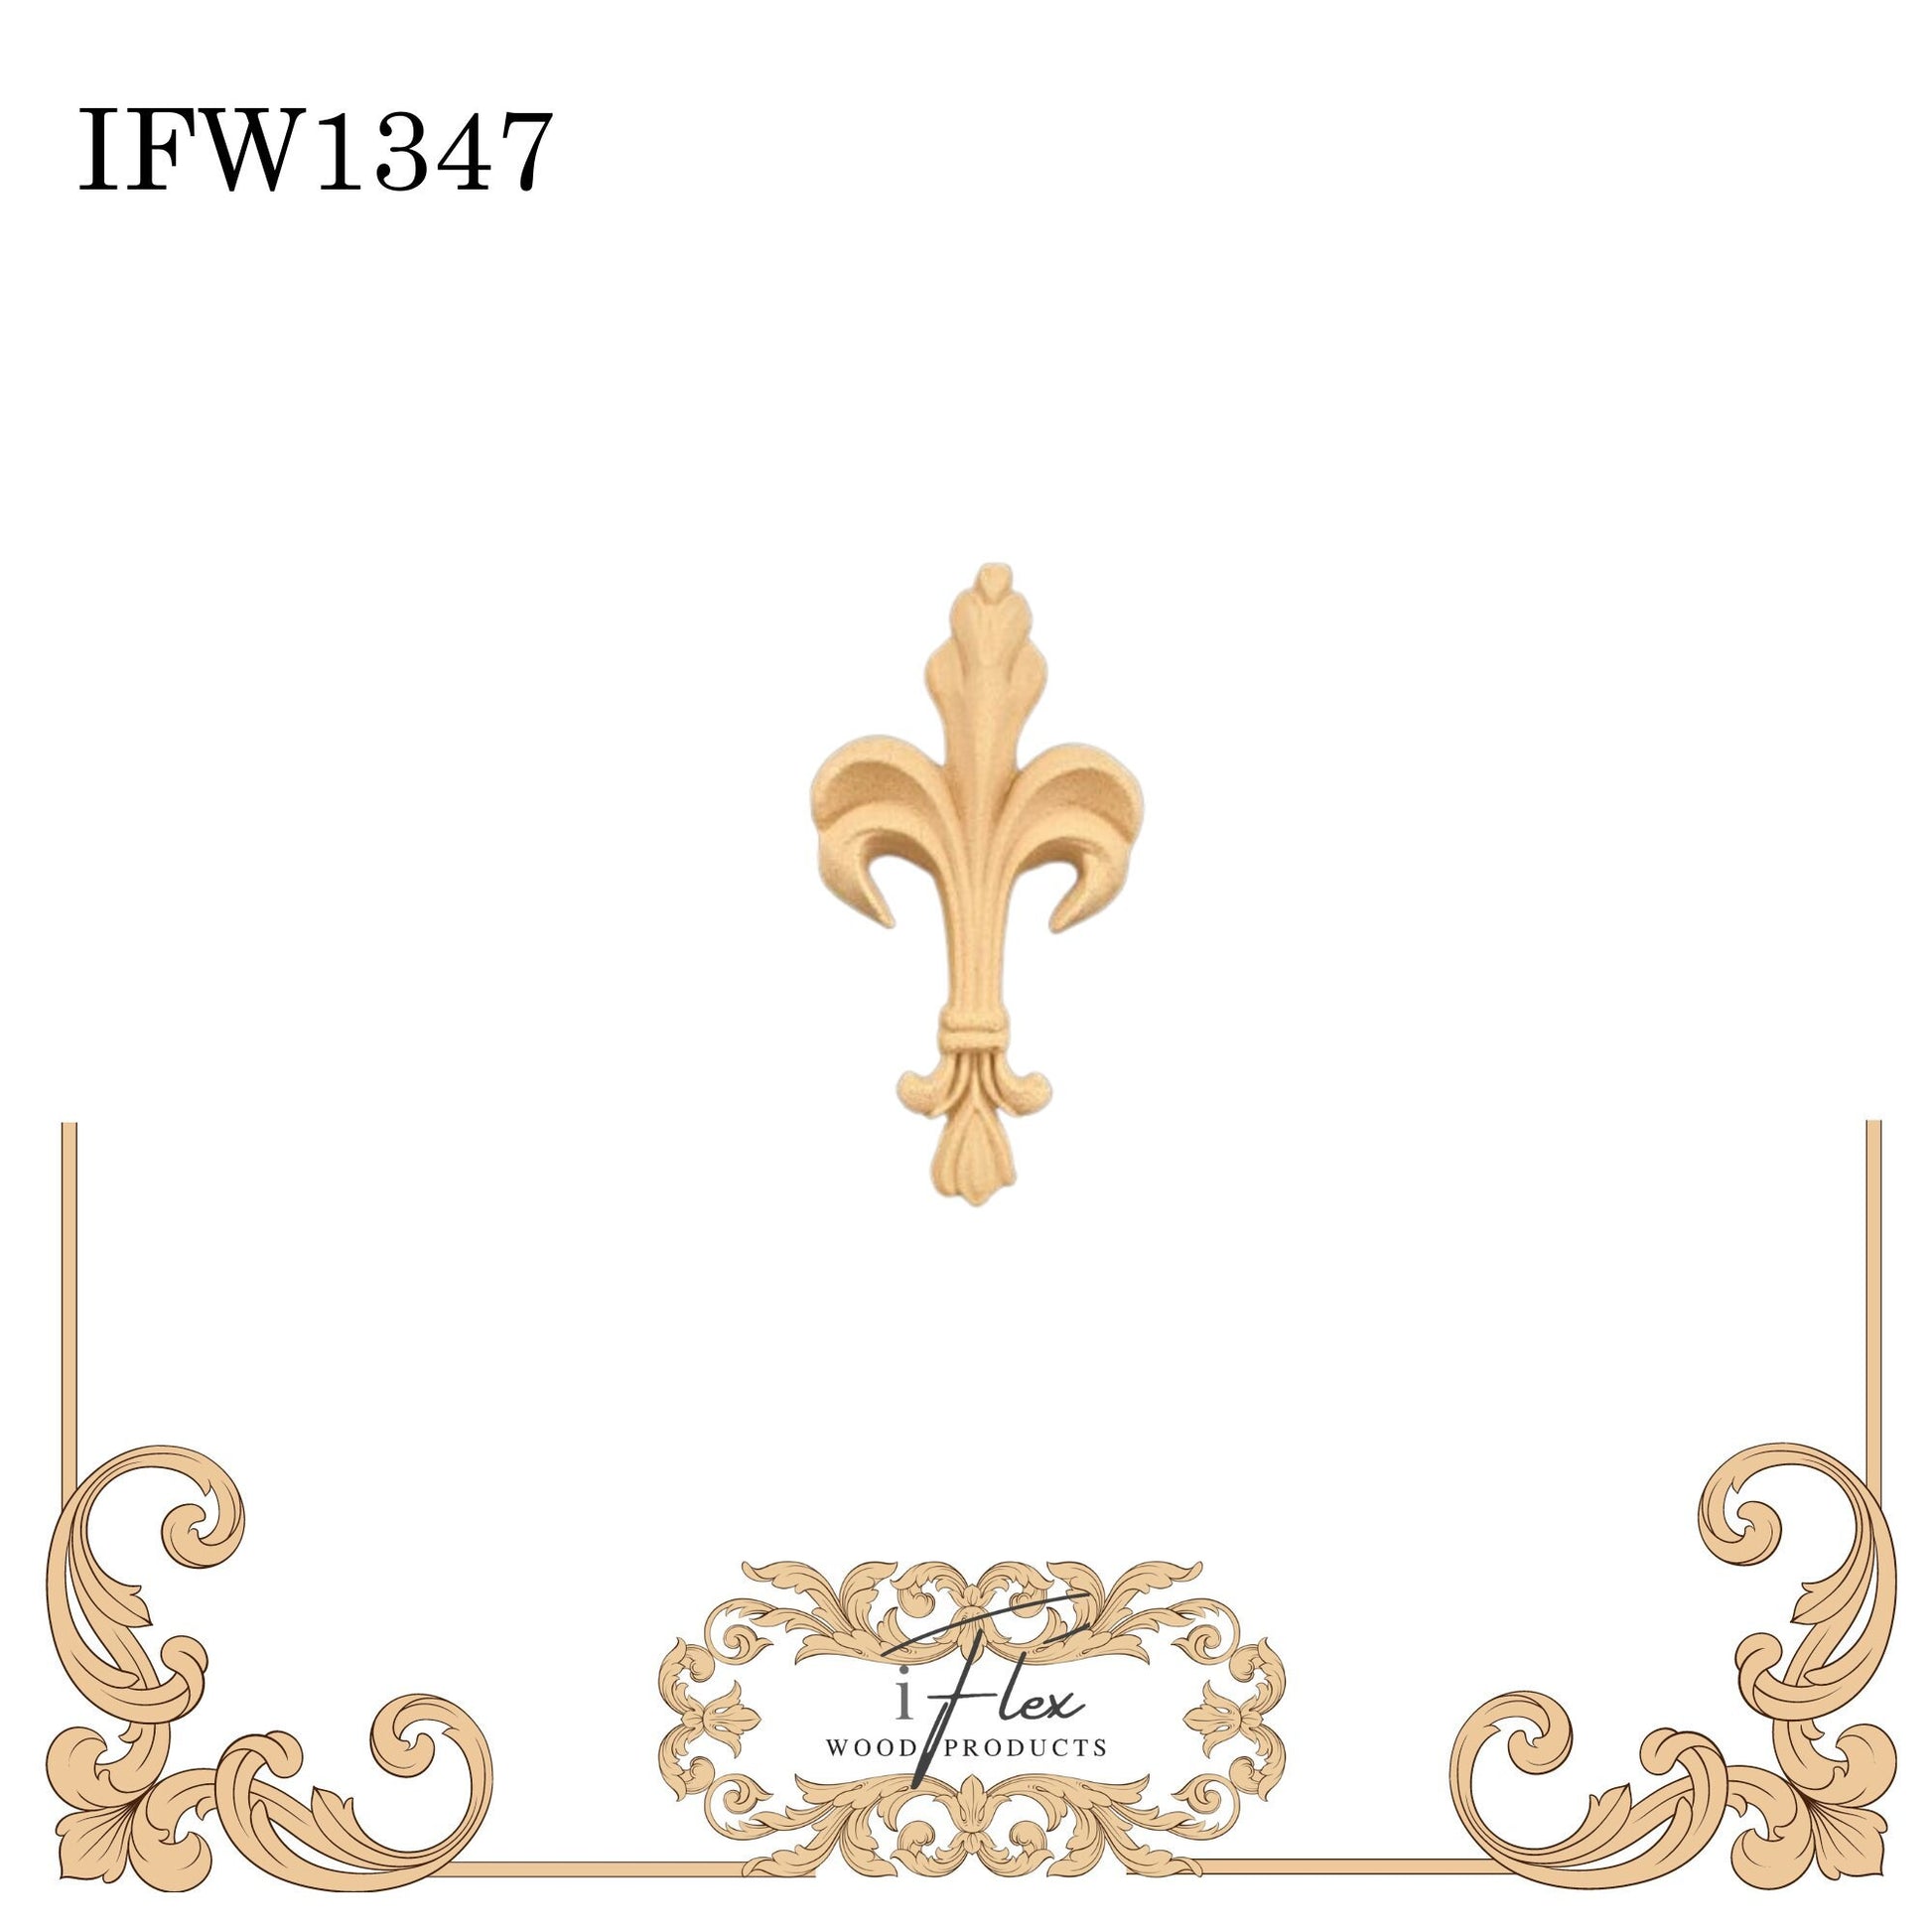 IFW 1347 iFlex Wood Products, bendable mouldings, flexible, wooden appliques, fleur de lis, floral